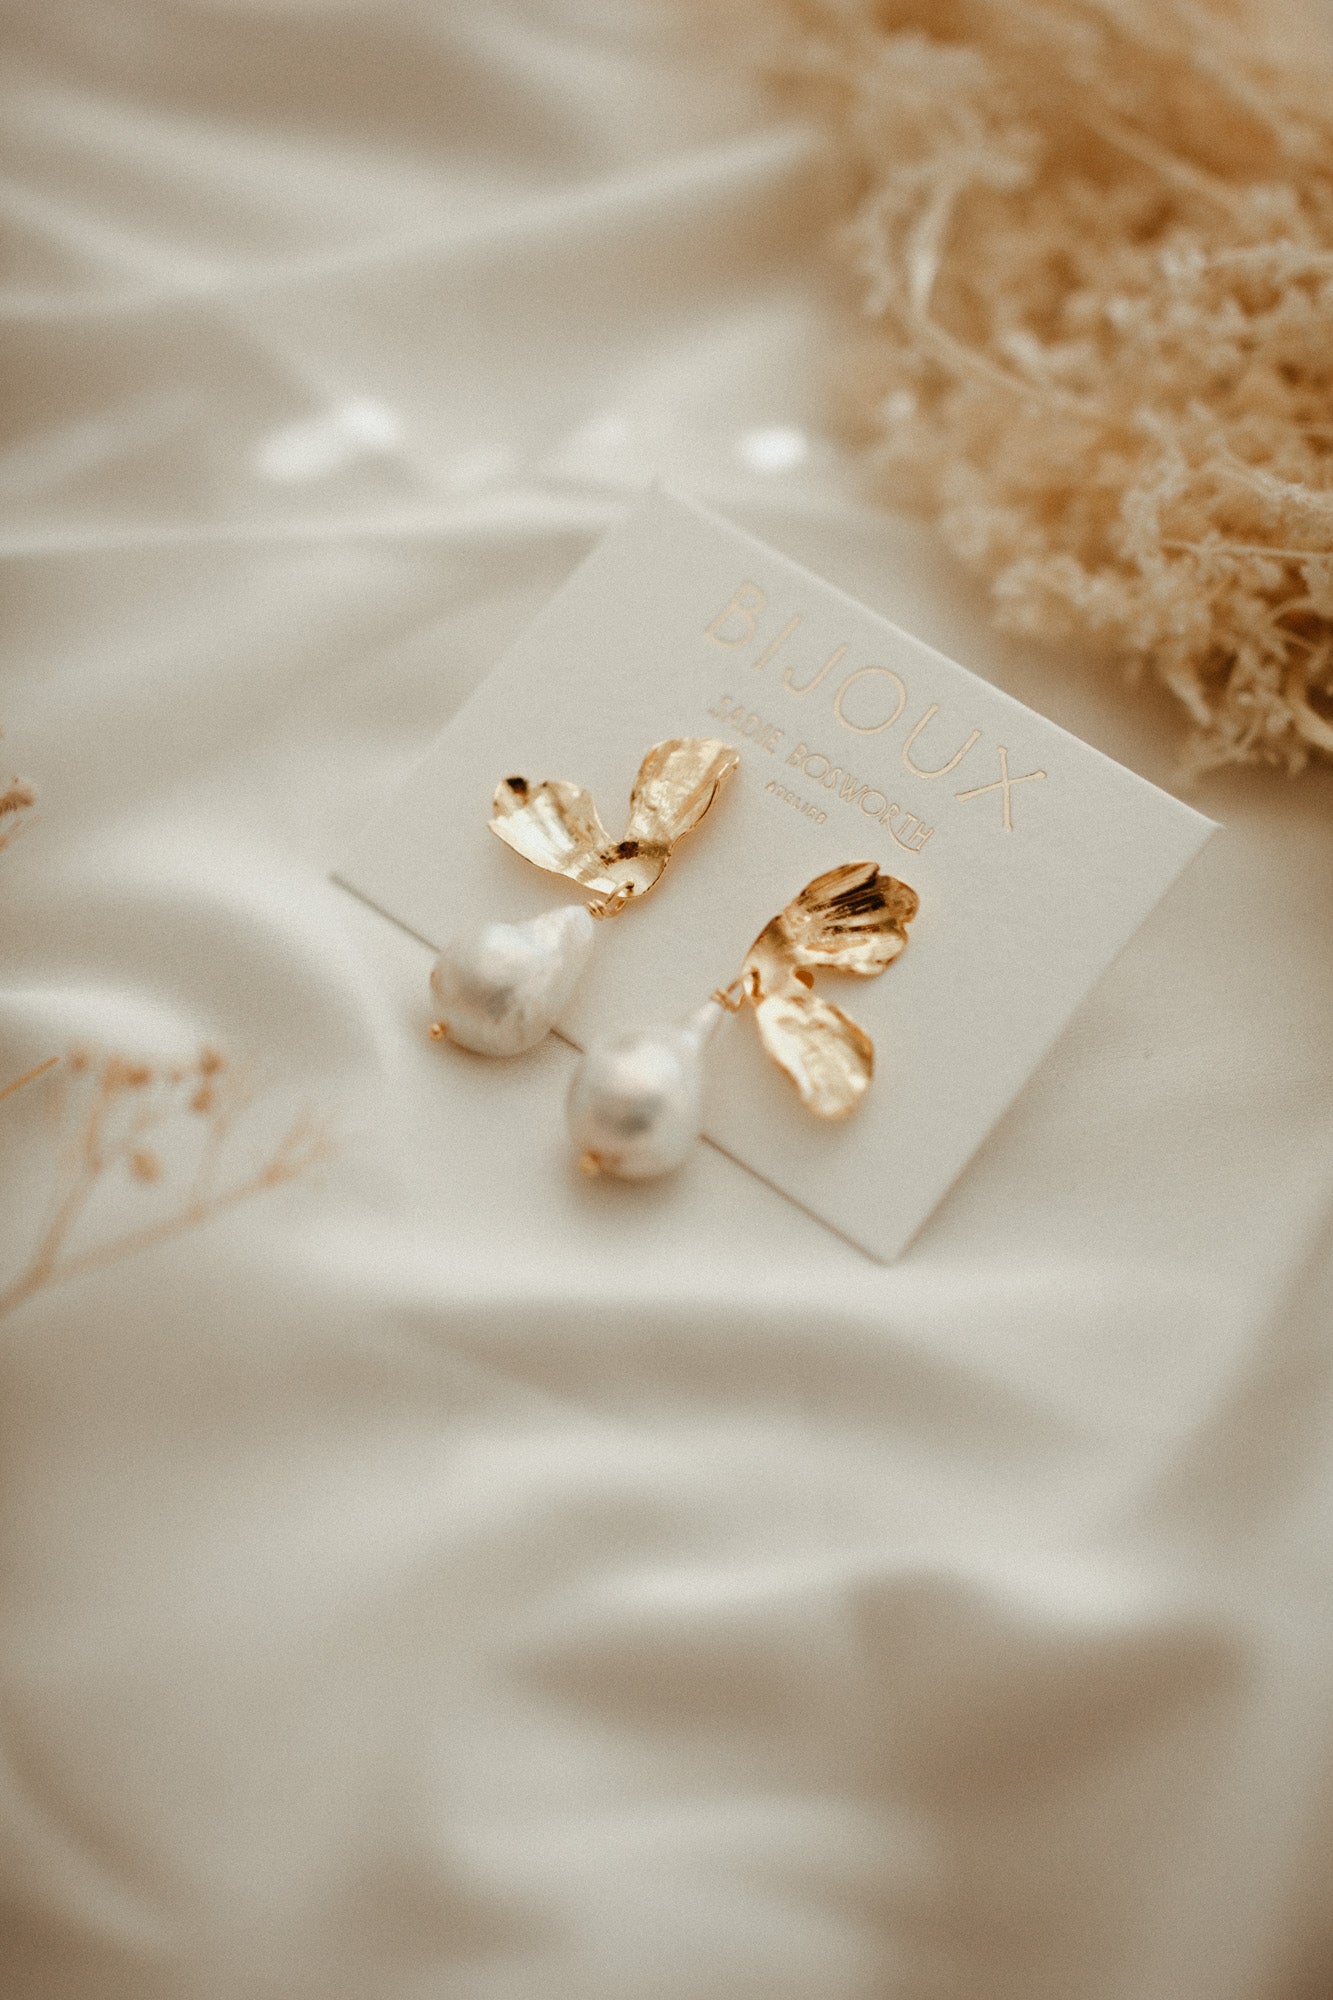 Broken Blossom Pearl Drops | Earrings | Sadie Bosworth Atelier